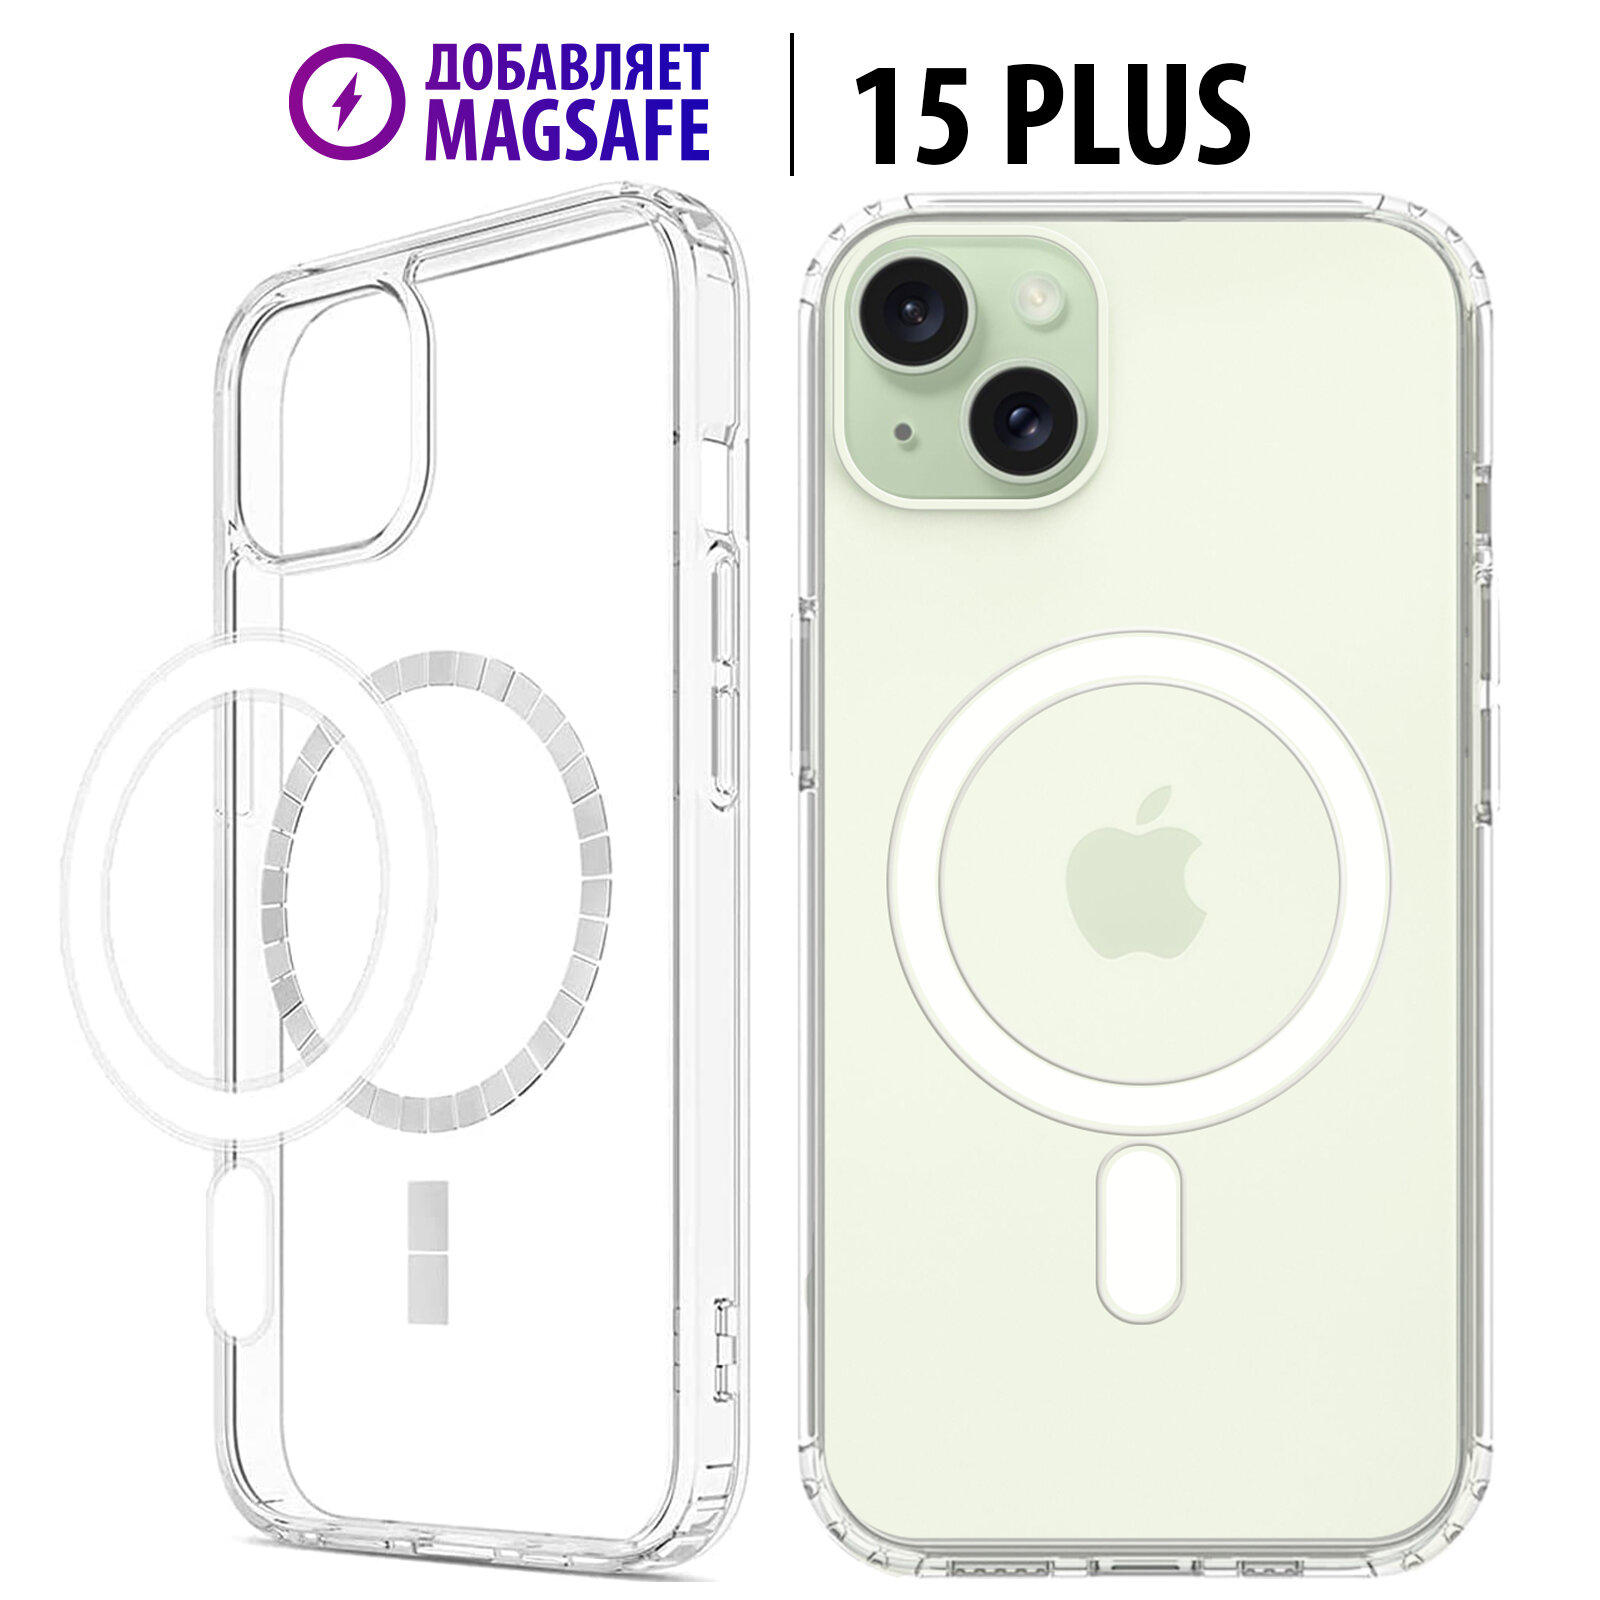 Чехол Luckroute на iPhone 15 Plus с поддержкой MagSafe для использования магнитных аксессуаров, противоударный, с усиленными углами, прозрачный